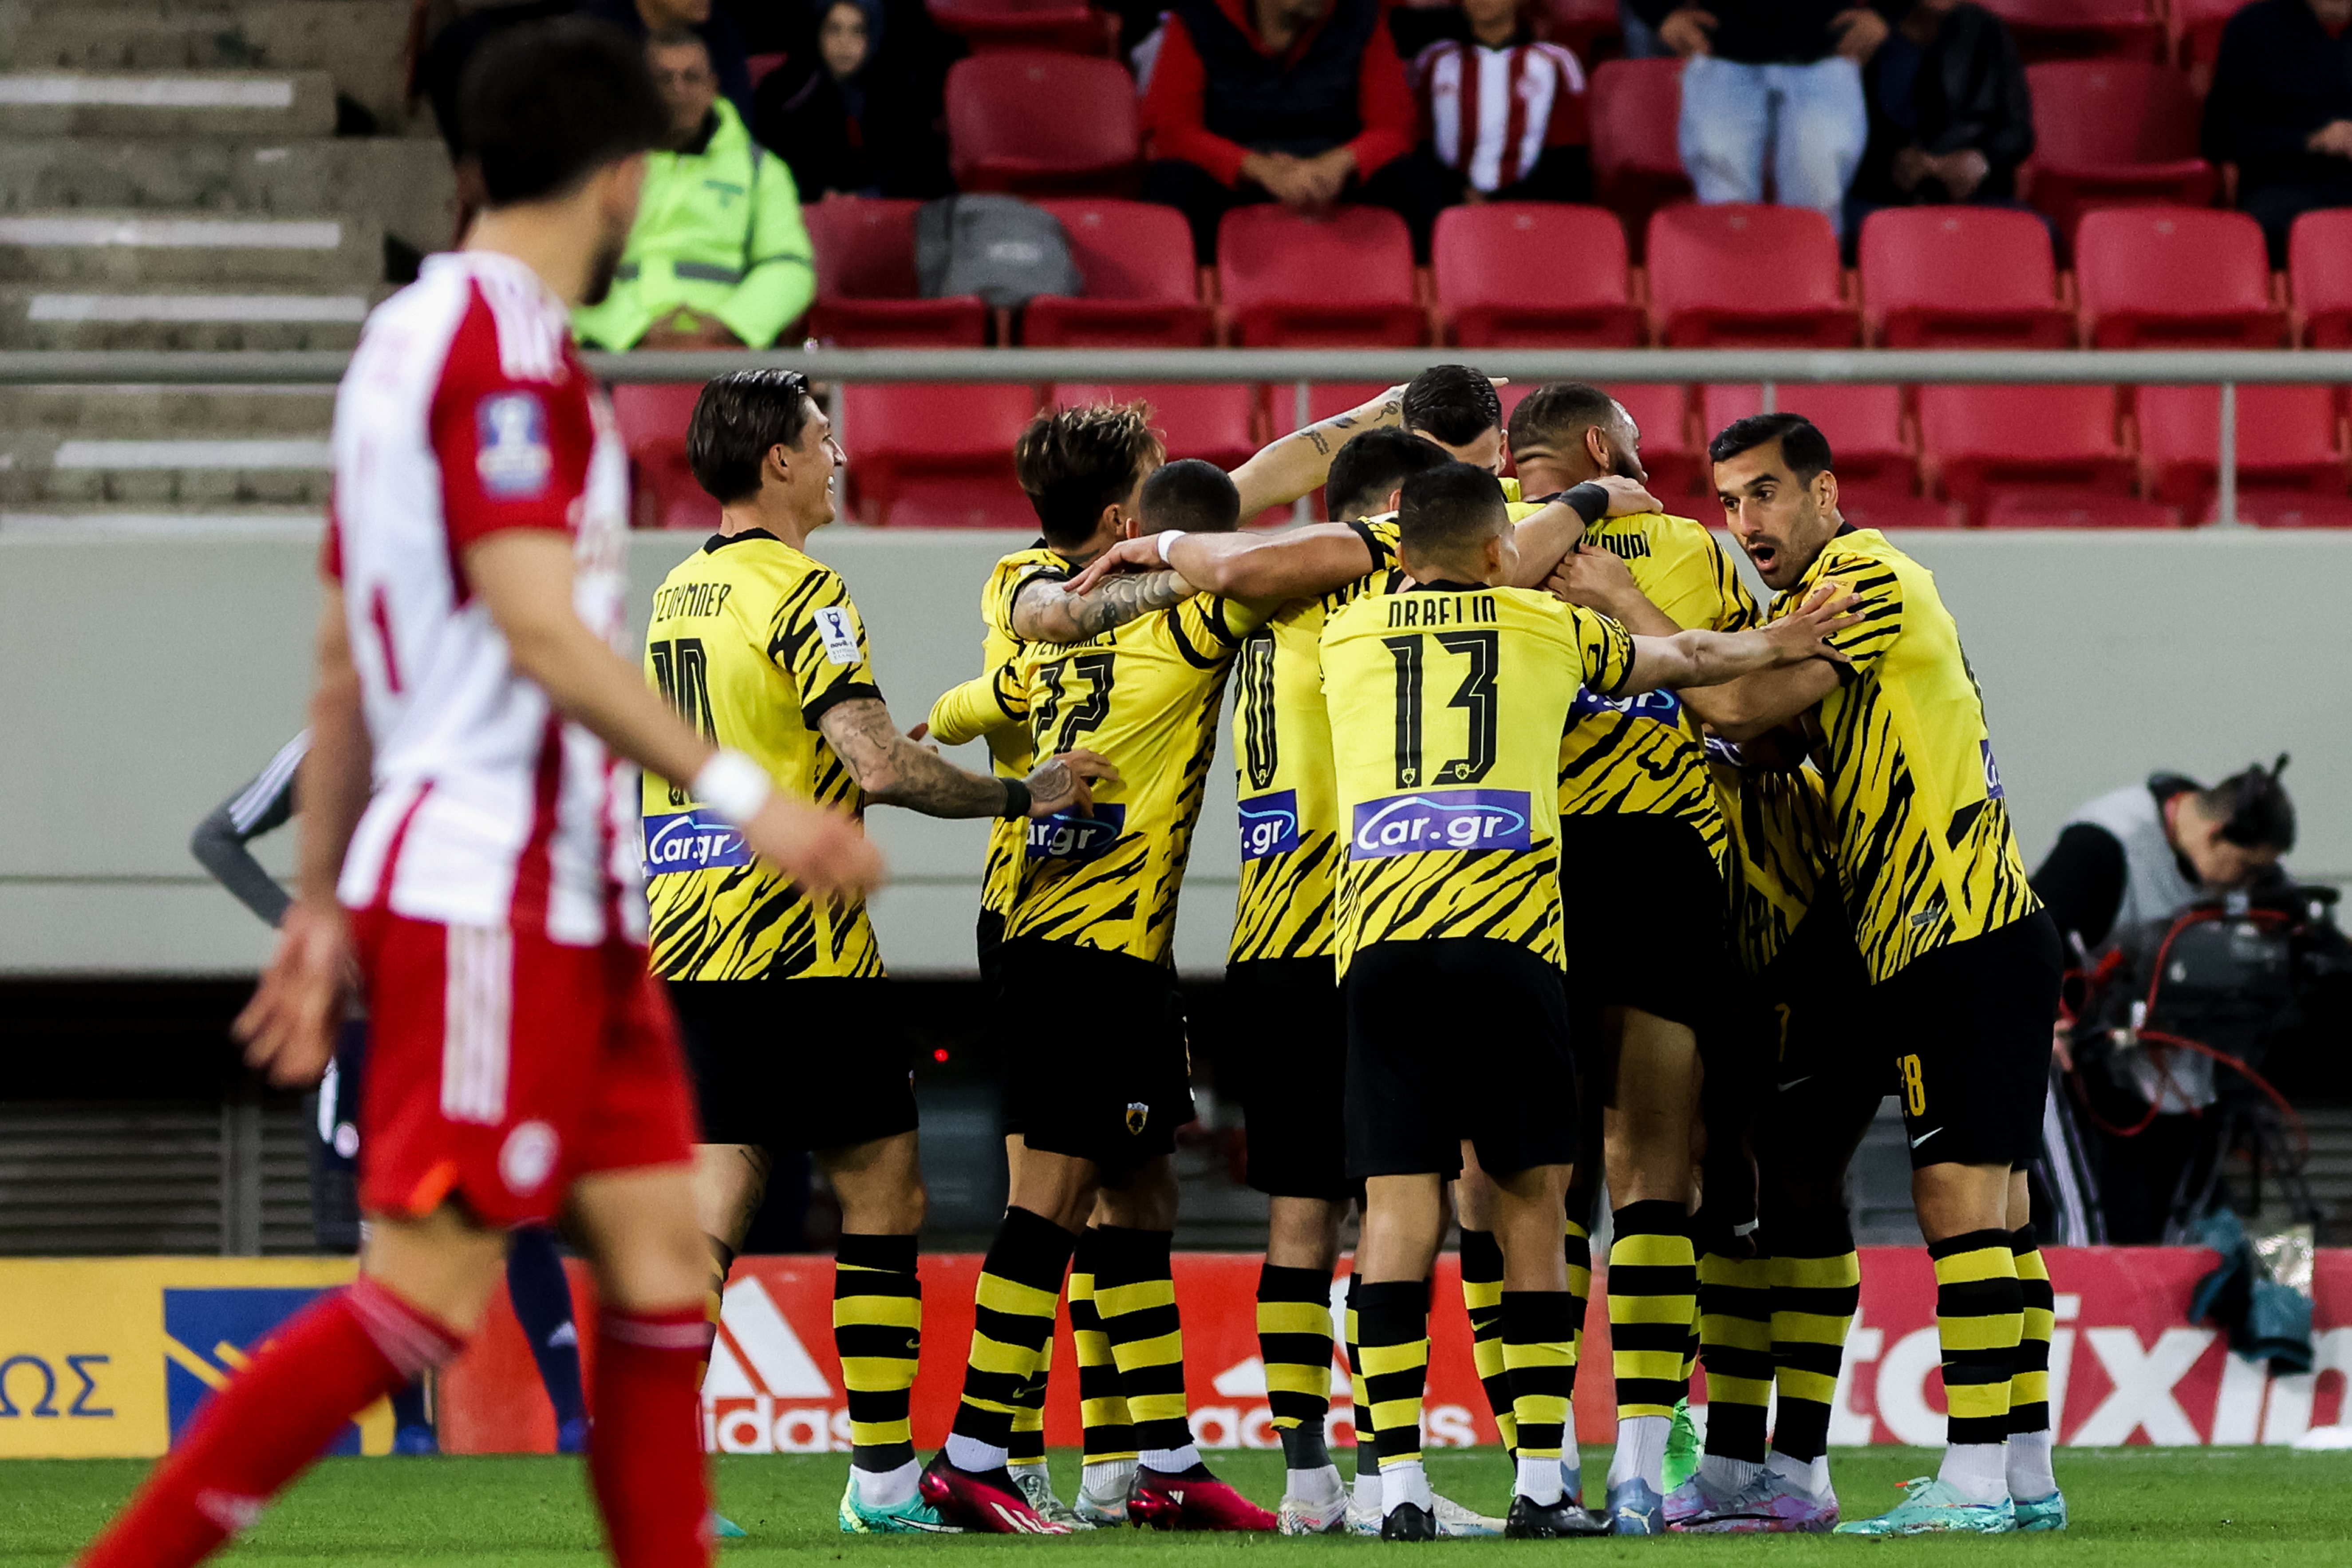 Προκρίθηκε η ΑΕΚ στον τελικό του Κυπέλλου παρά την ήττα με 2-1 στο Καραϊσκάκης